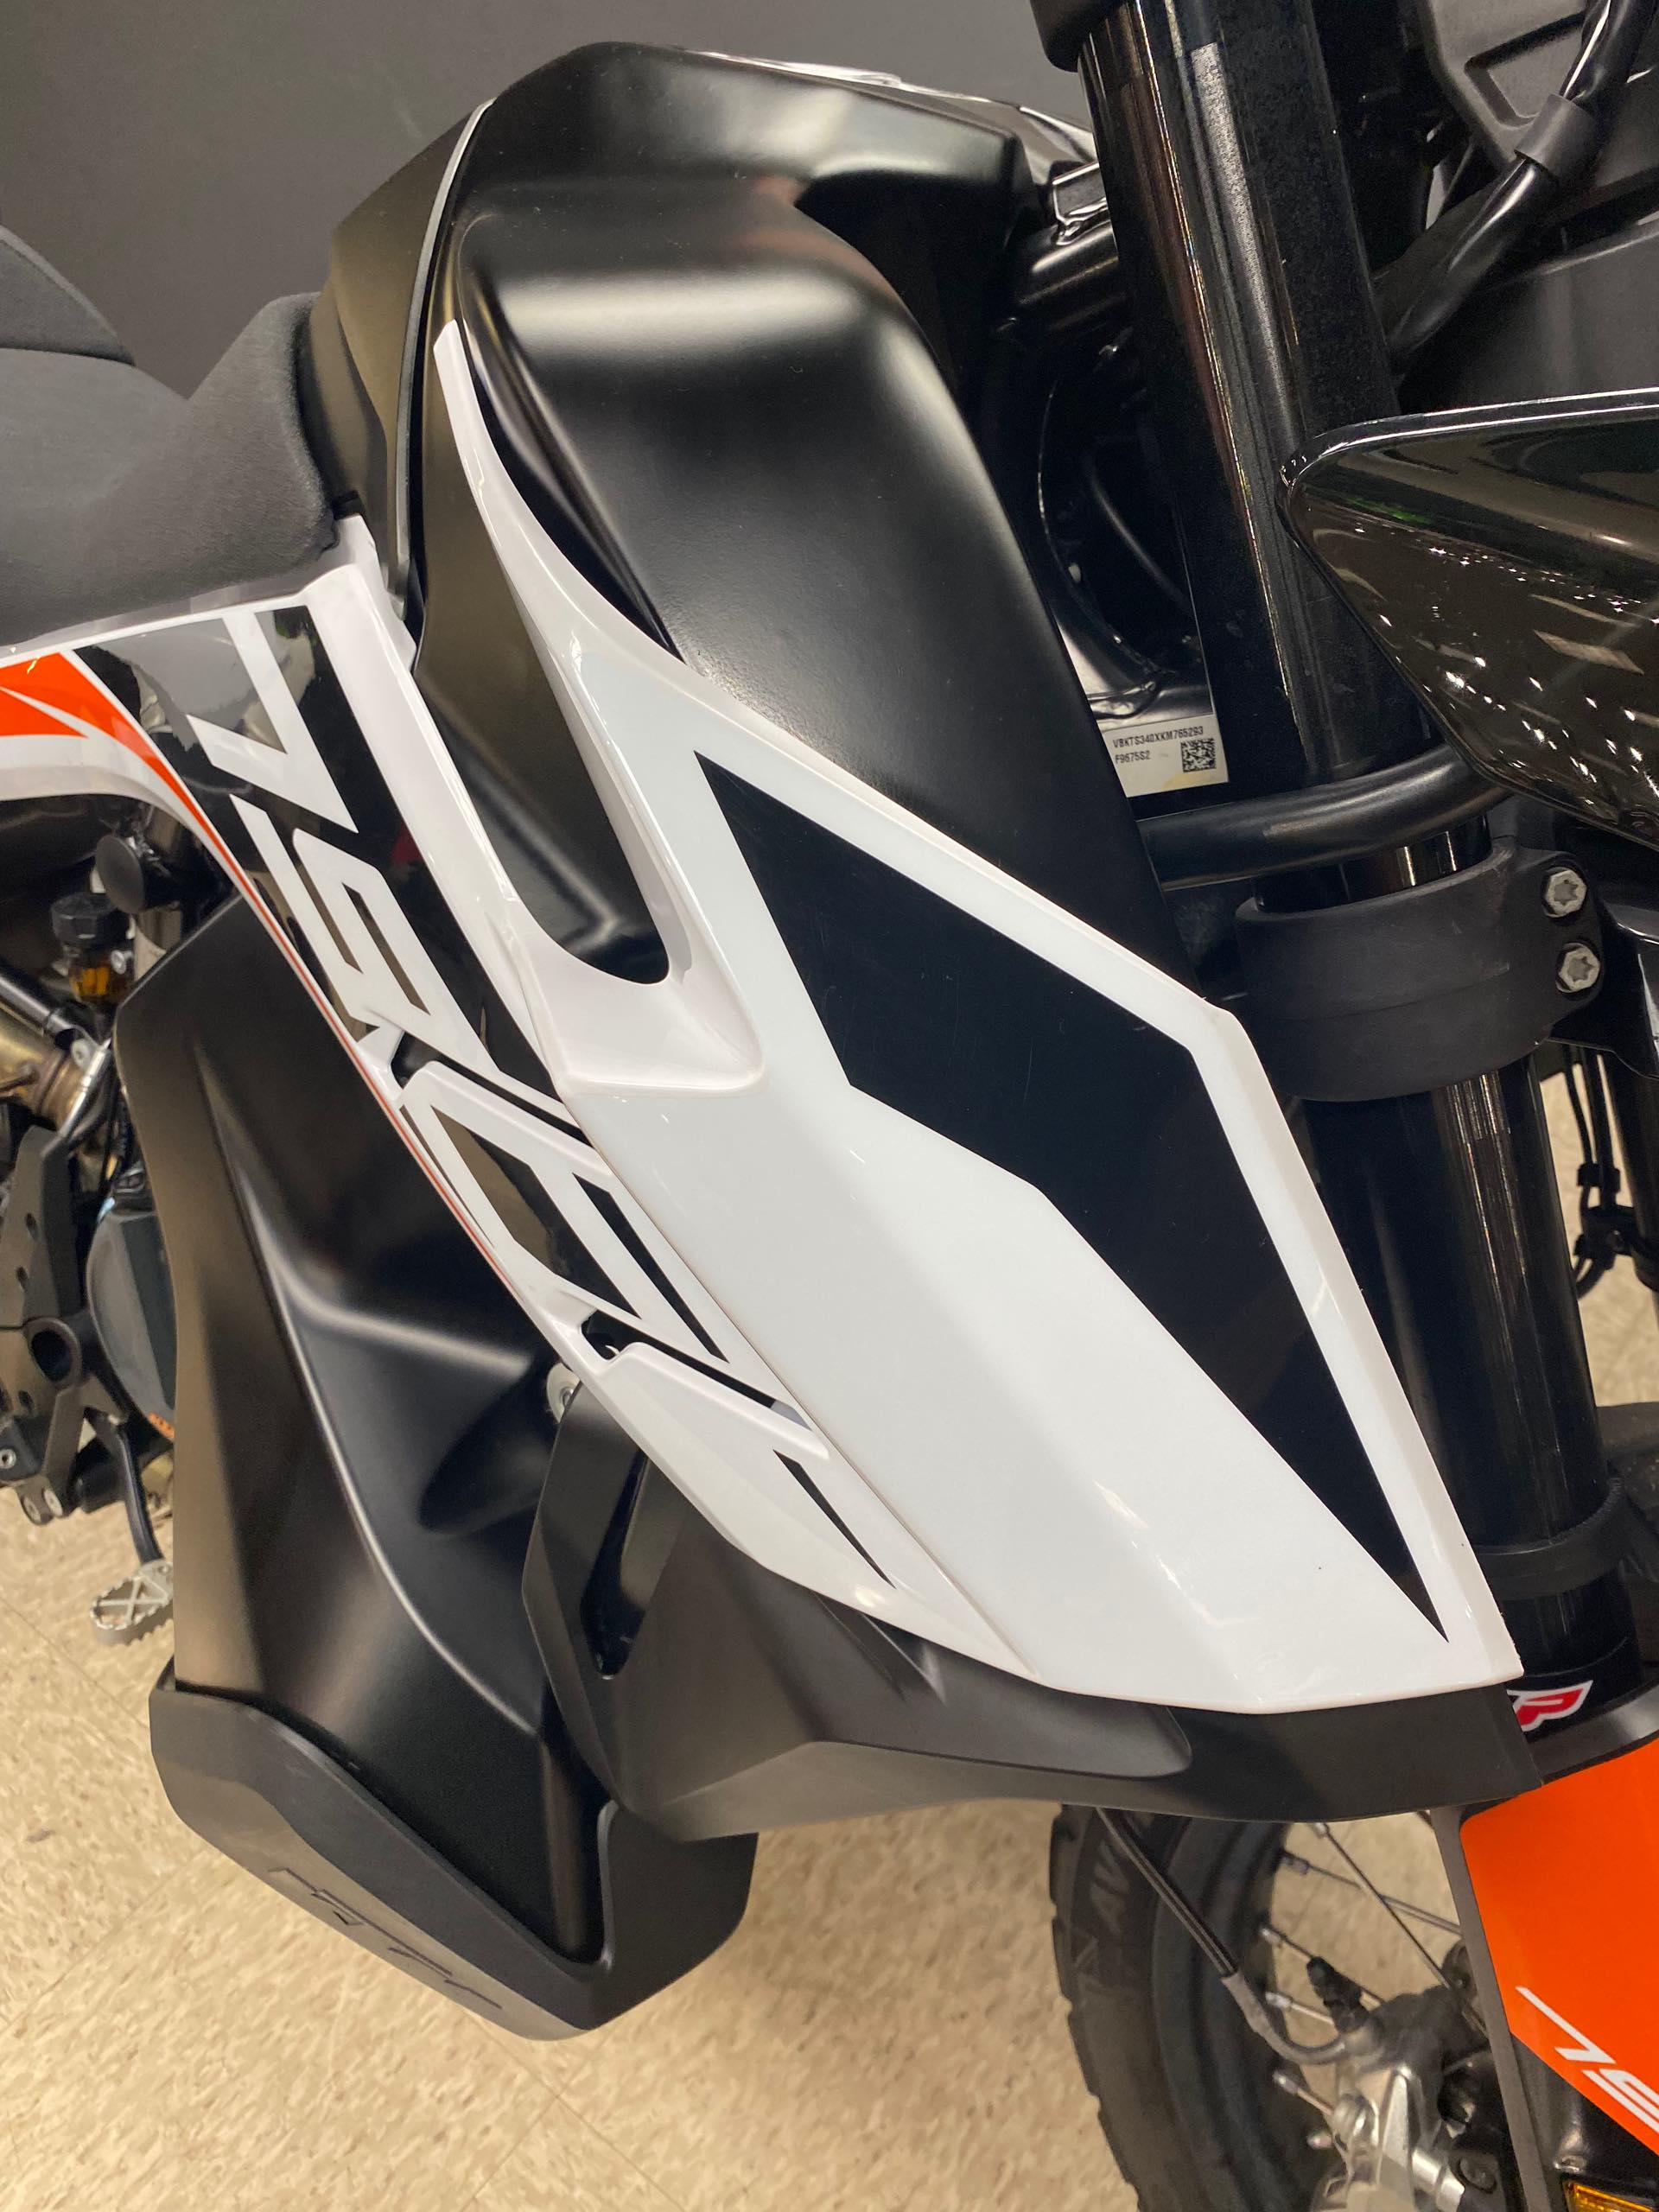 2019 KTM Adventure 790 at Sloans Motorcycle ATV, Murfreesboro, TN, 37129